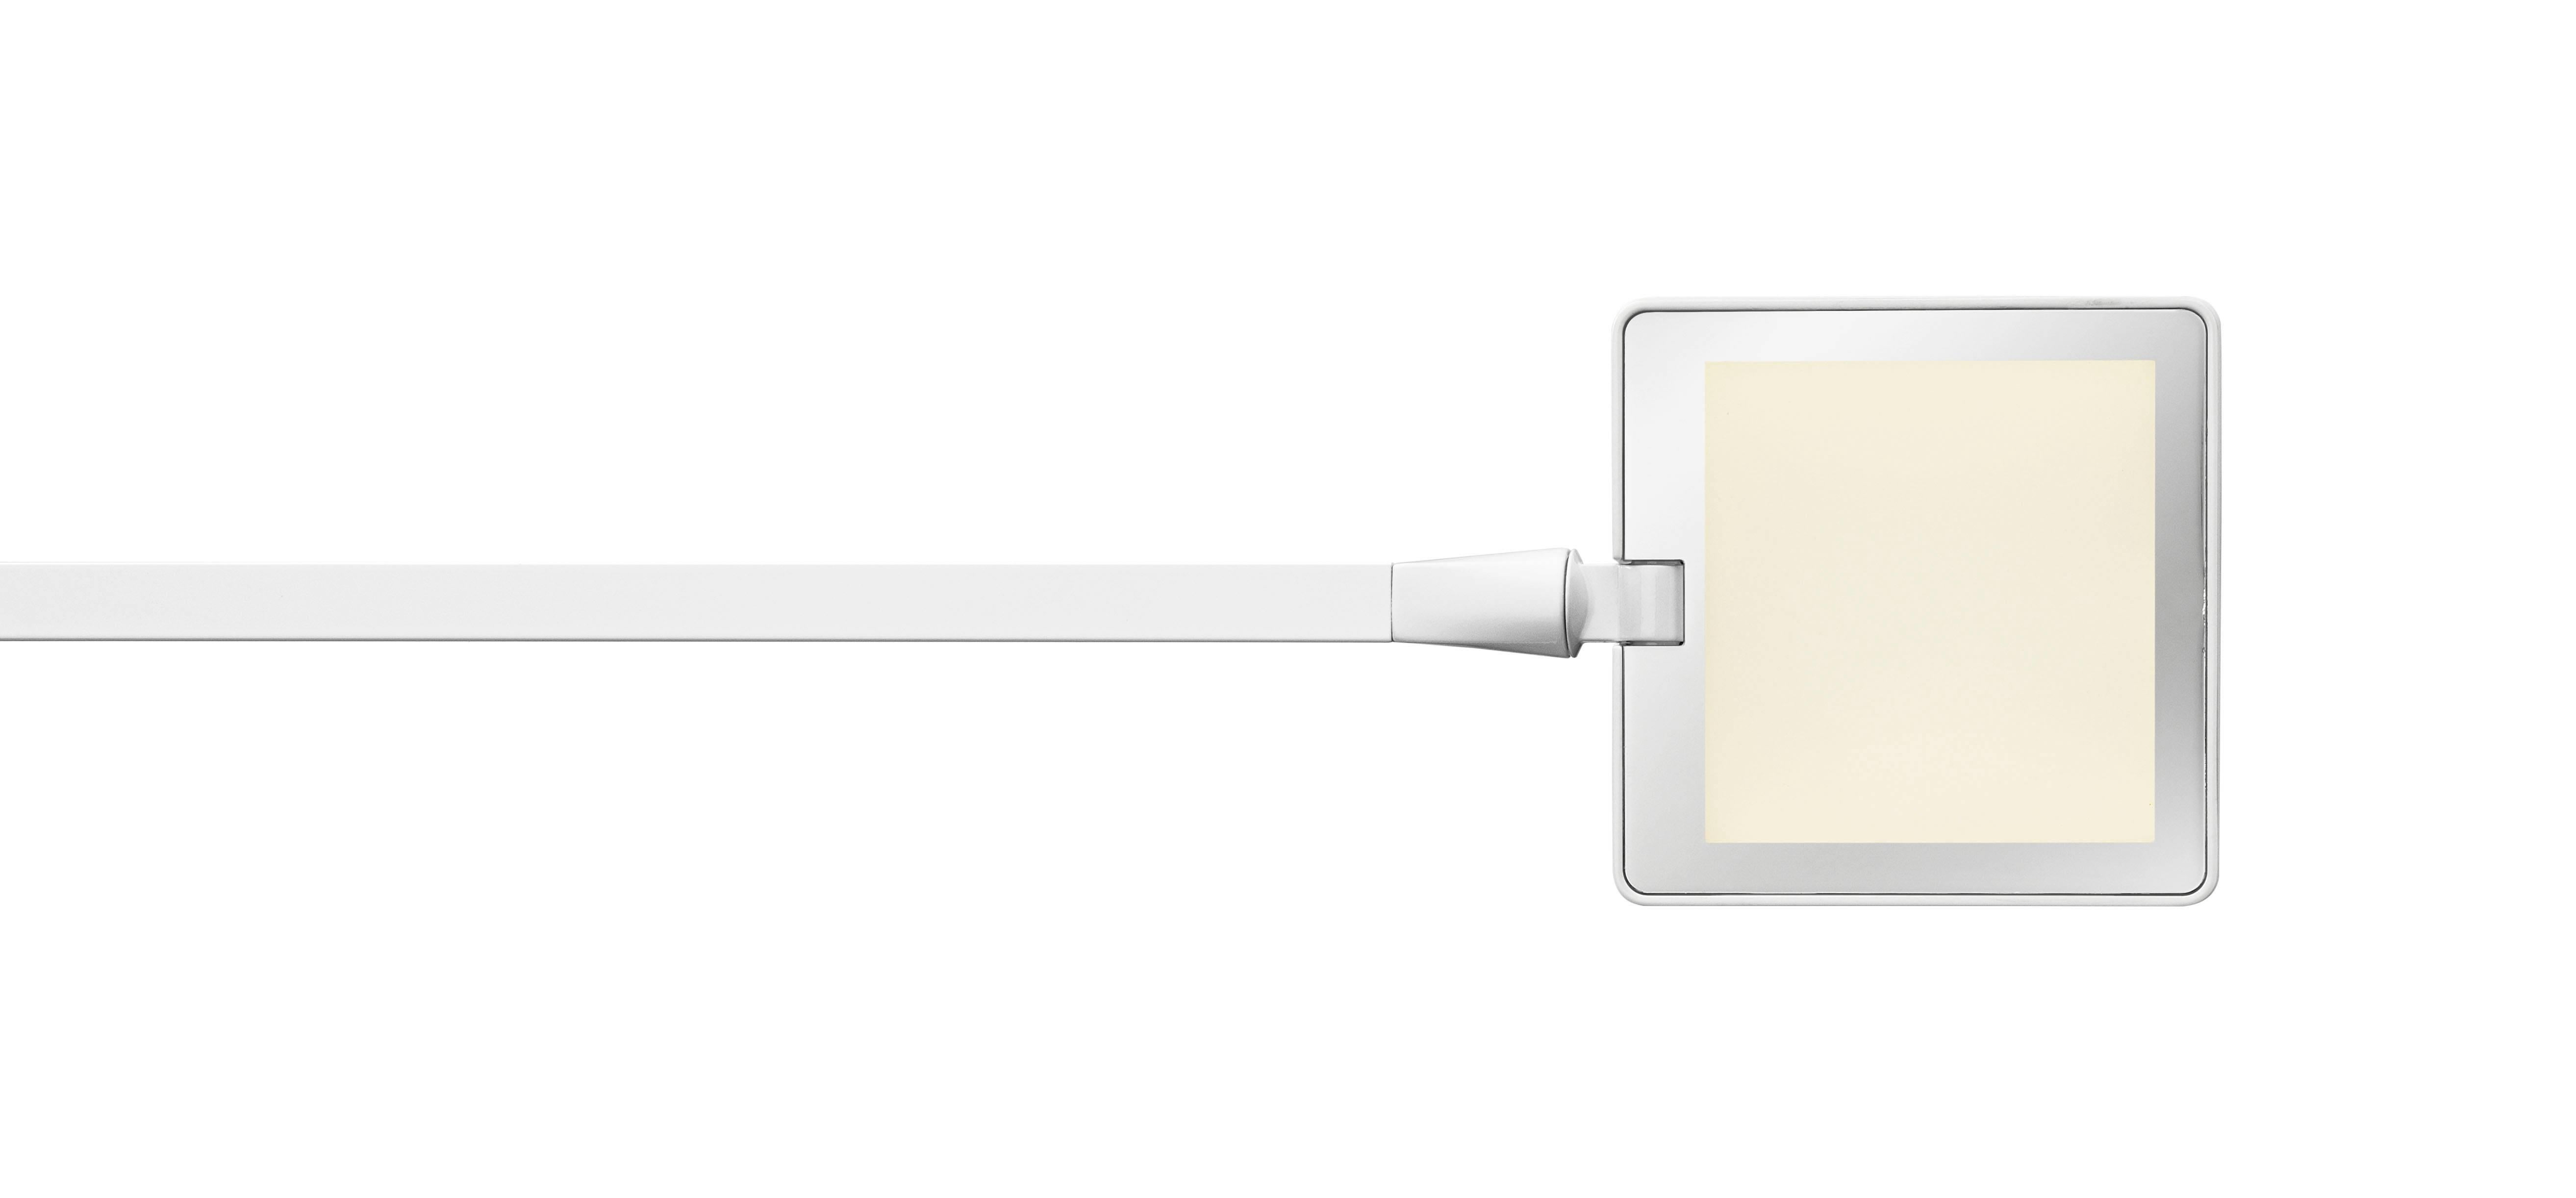 Die Kelvin Edge ist die neueste Ergänzung der beliebten Kelvin-LED-Familie und bietet die Innovation und das schlanke Design der Kollektion in einem kleineren Gehäuse, ohne dabei an Leistung einzubüßen. Mit der exklusiven Edge Lighting Technology,